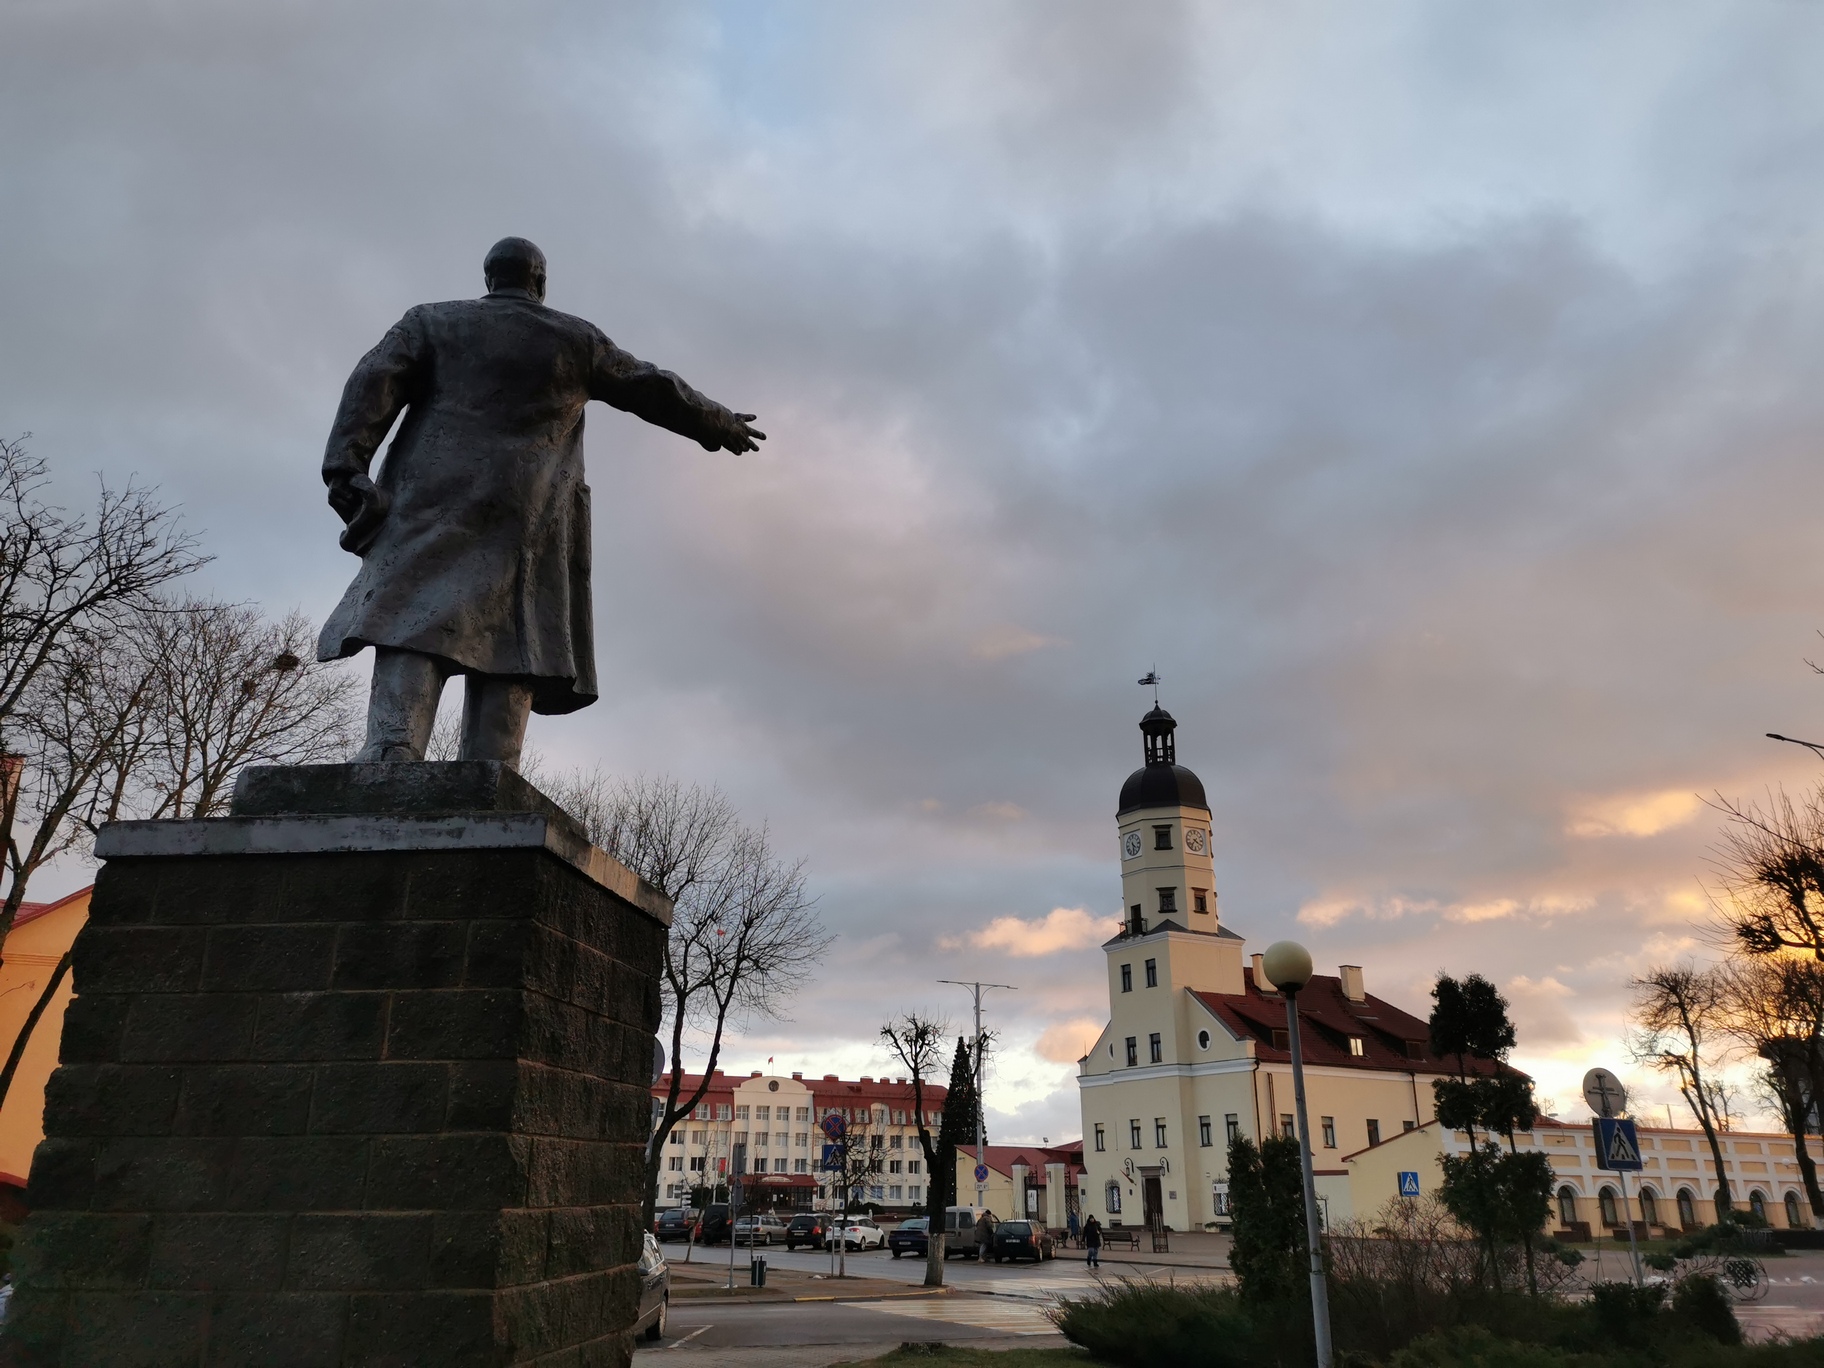 Pomnik Lenina i szesnastowieczny ratusz w Nieświeżu Фота Сяргея Аляксандровіча